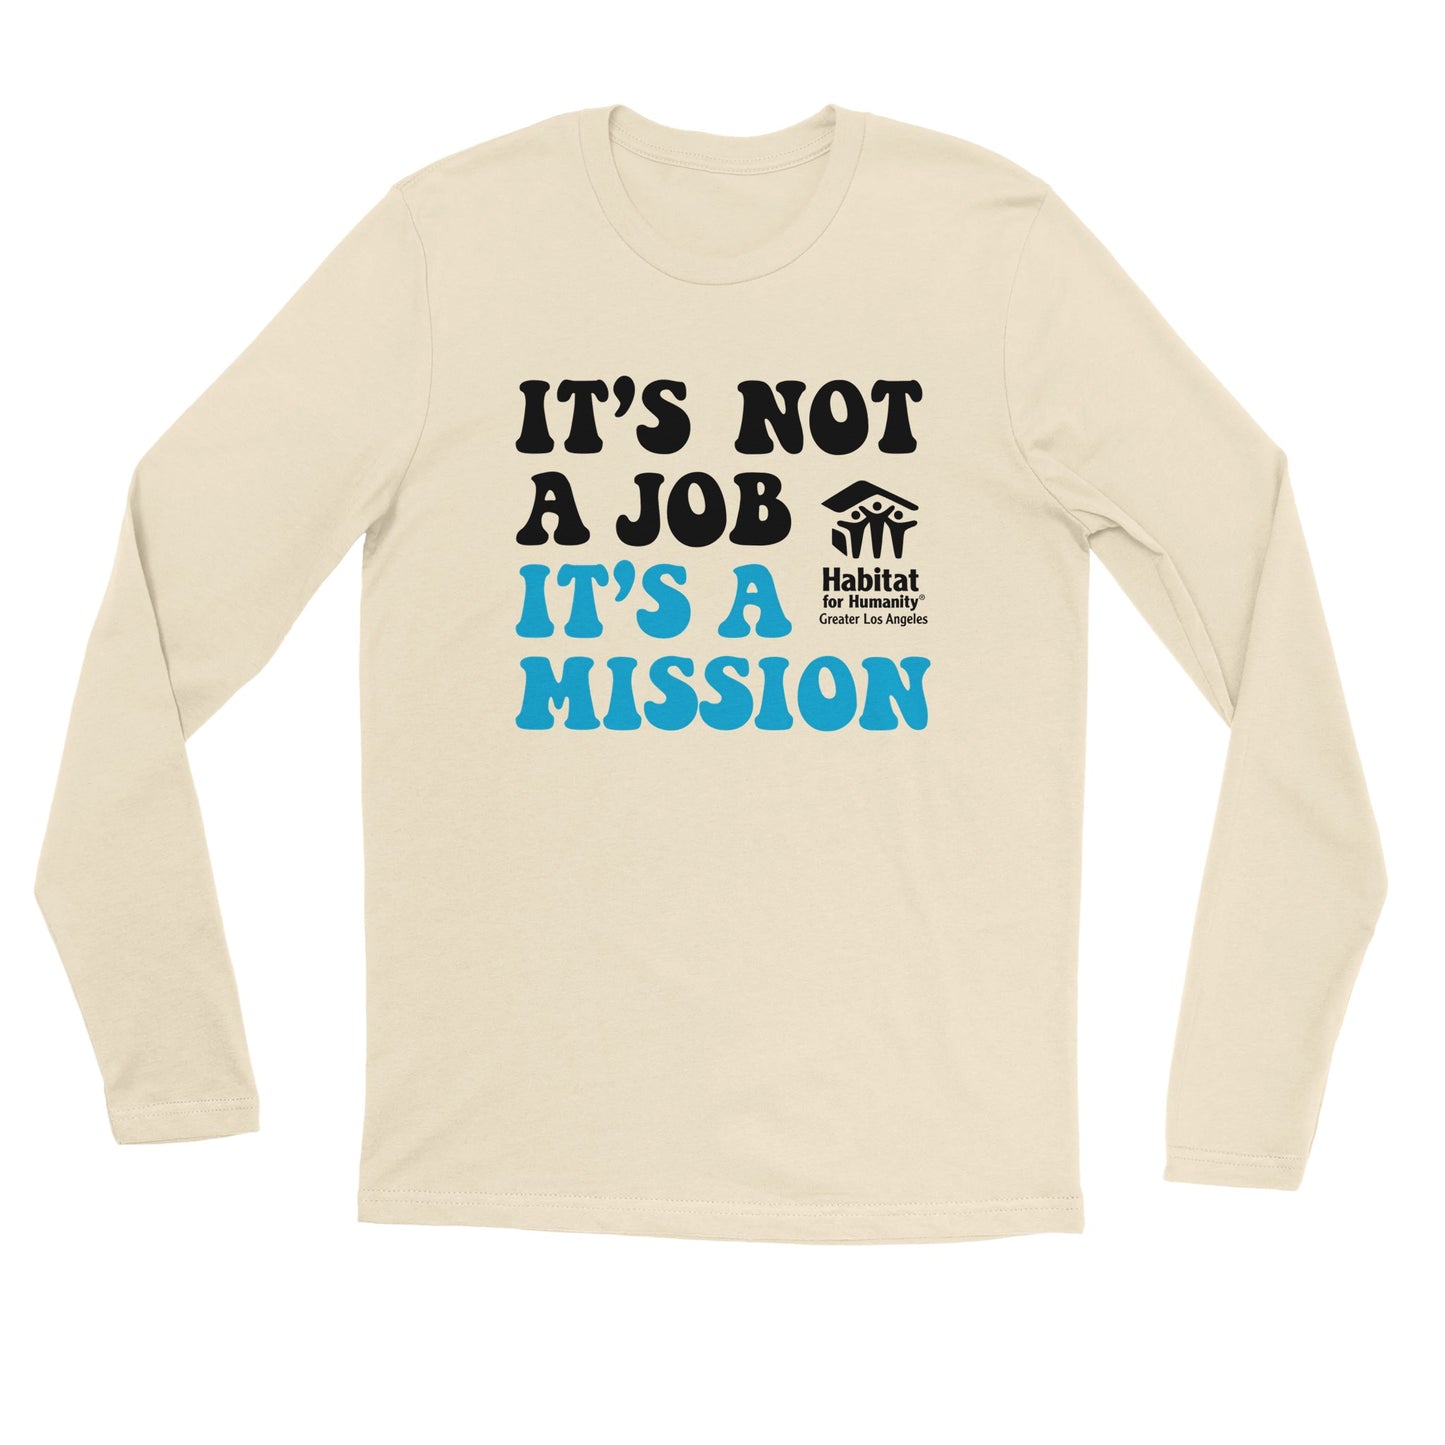 "It's a Mission" Premium Unisex Longsleeve T-shirt